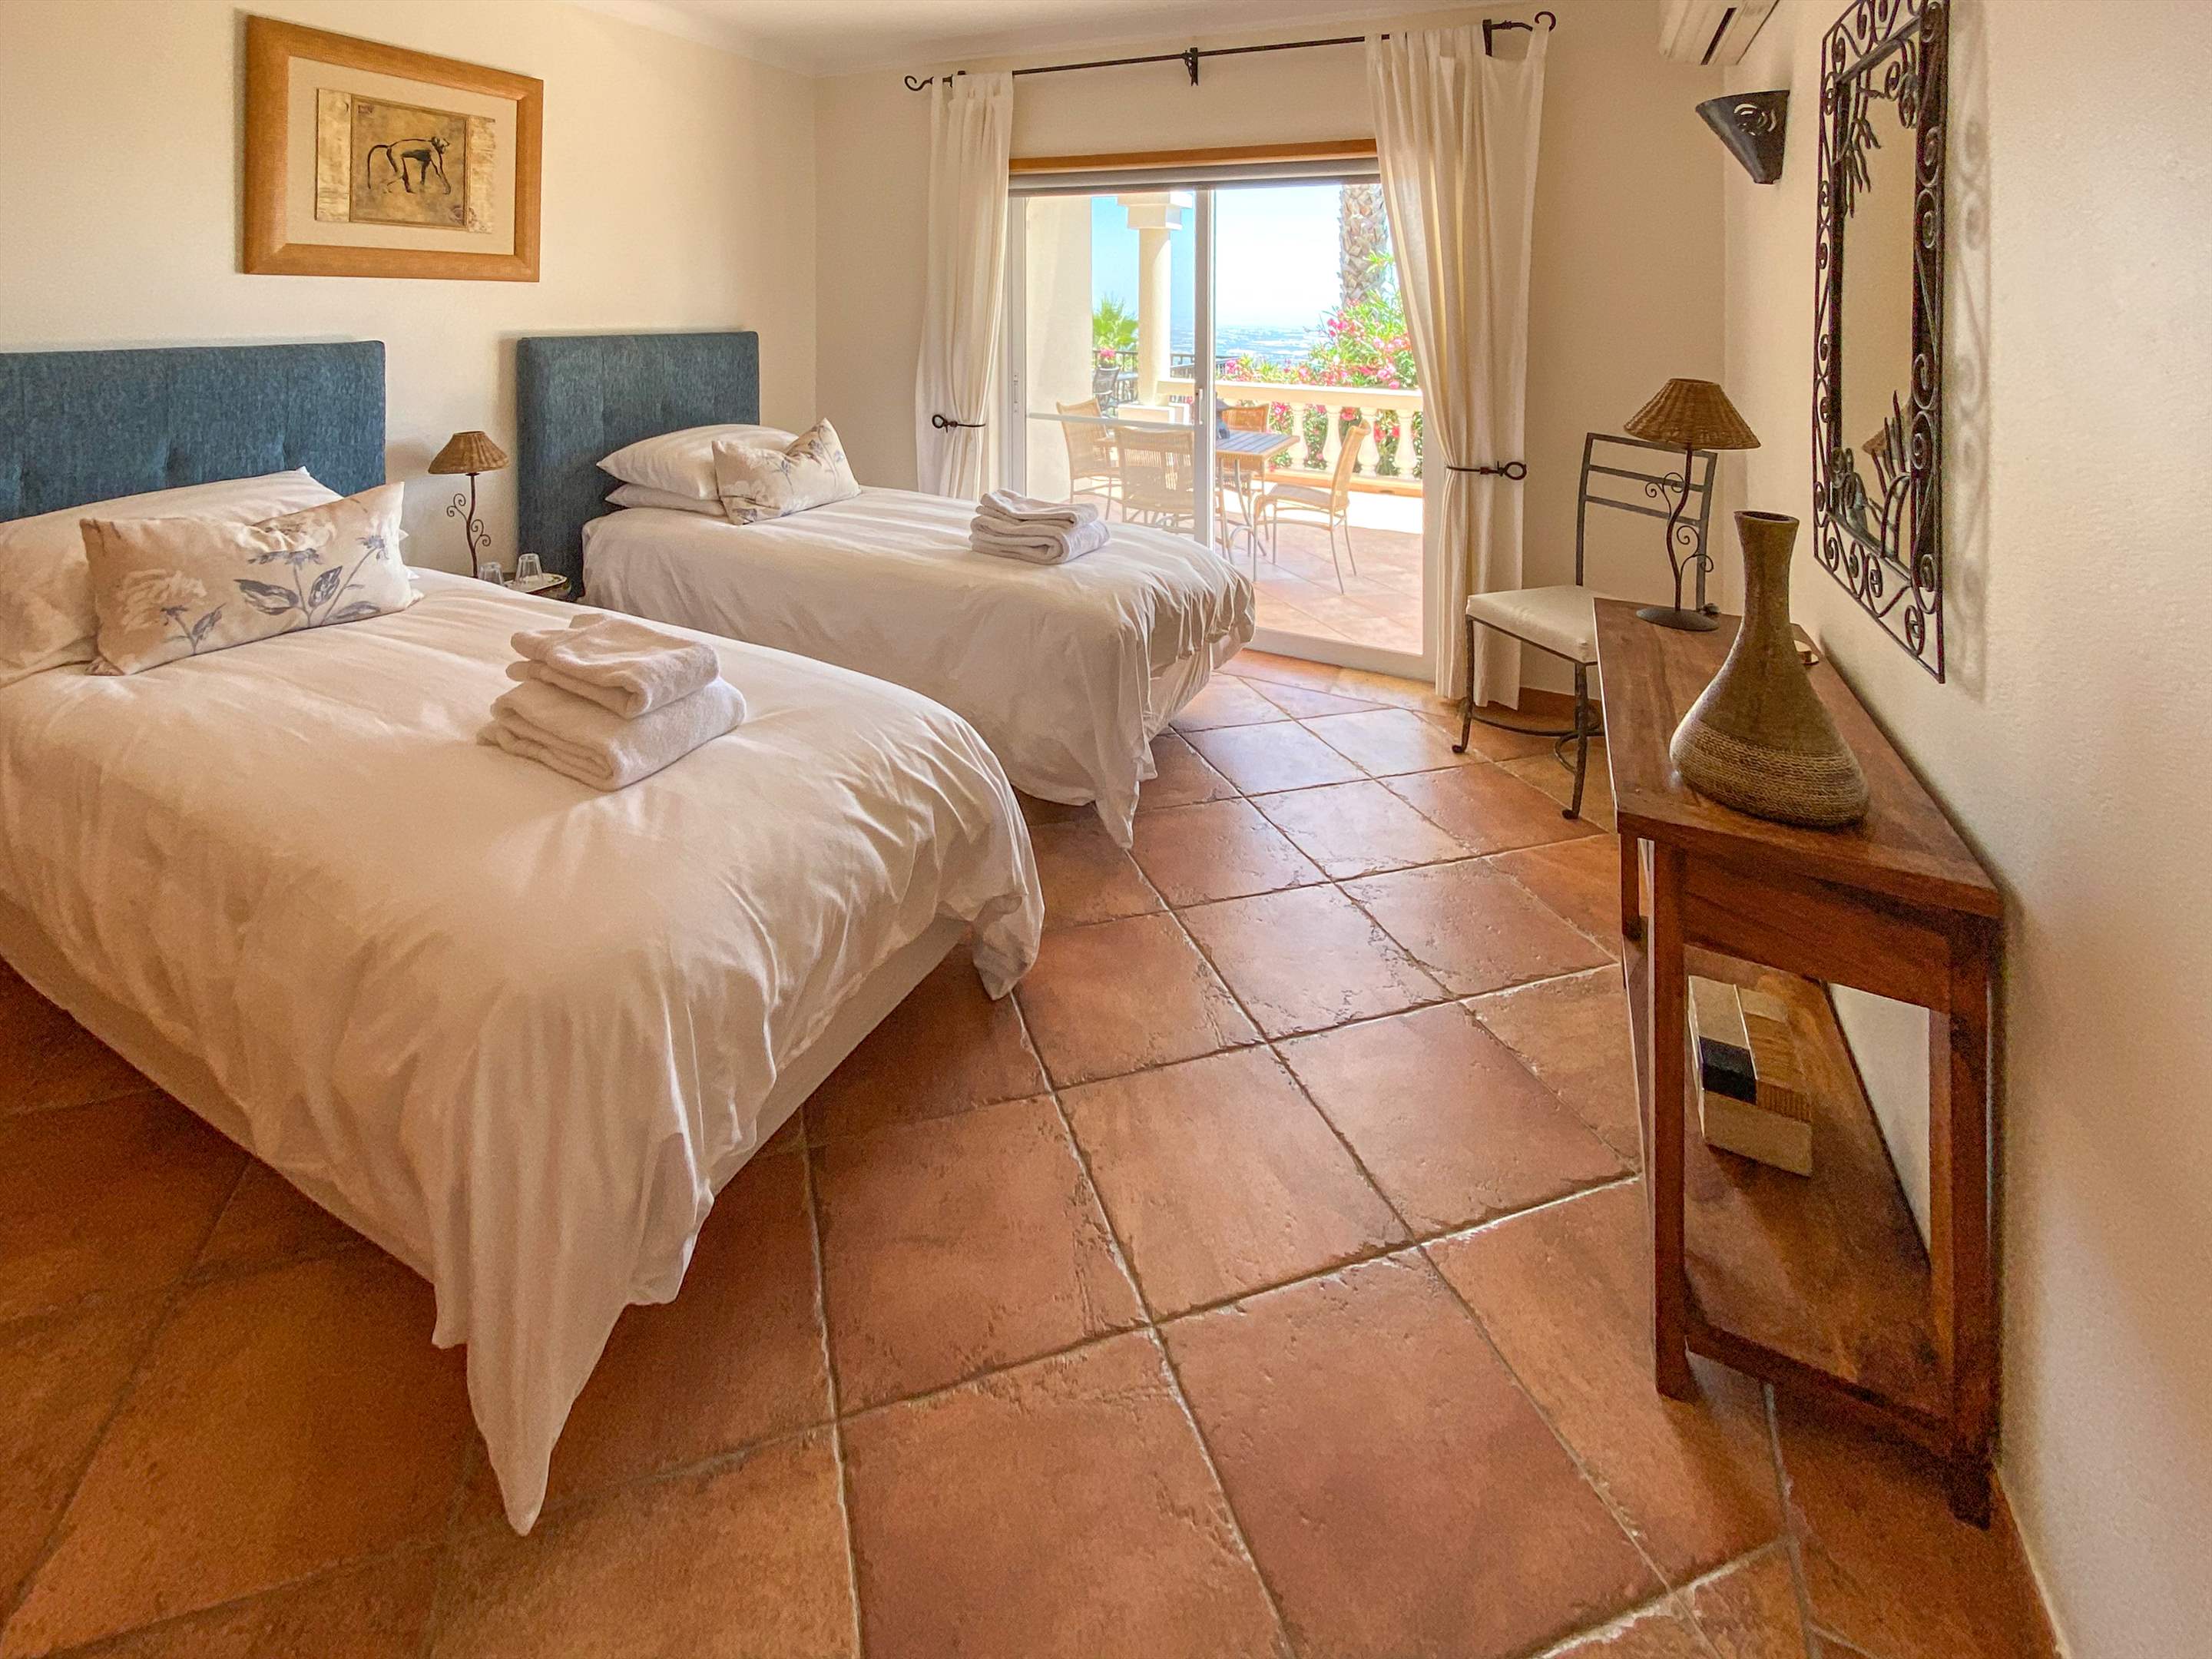 Villa Netuno, 11 persons rate, 1 extra person on sofa bed, 5 bedroom villa in Algarve Countryside, Algarve Photo #27